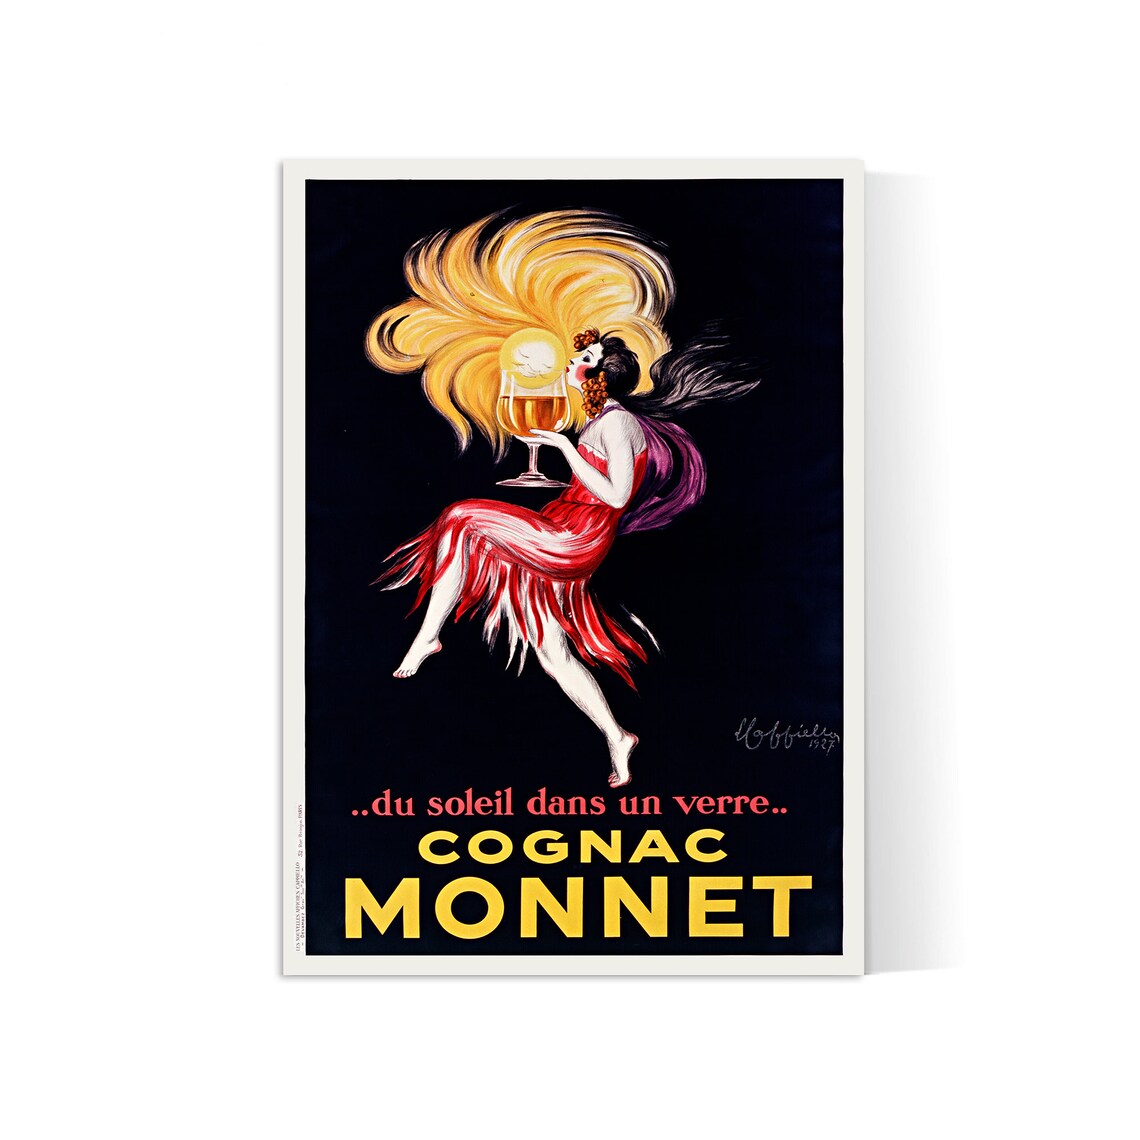 Vintage-Alkoholplakat „Cognac Monnet“ Leonetto Cappiello – High Definition – mattes Papier 230 g/m2